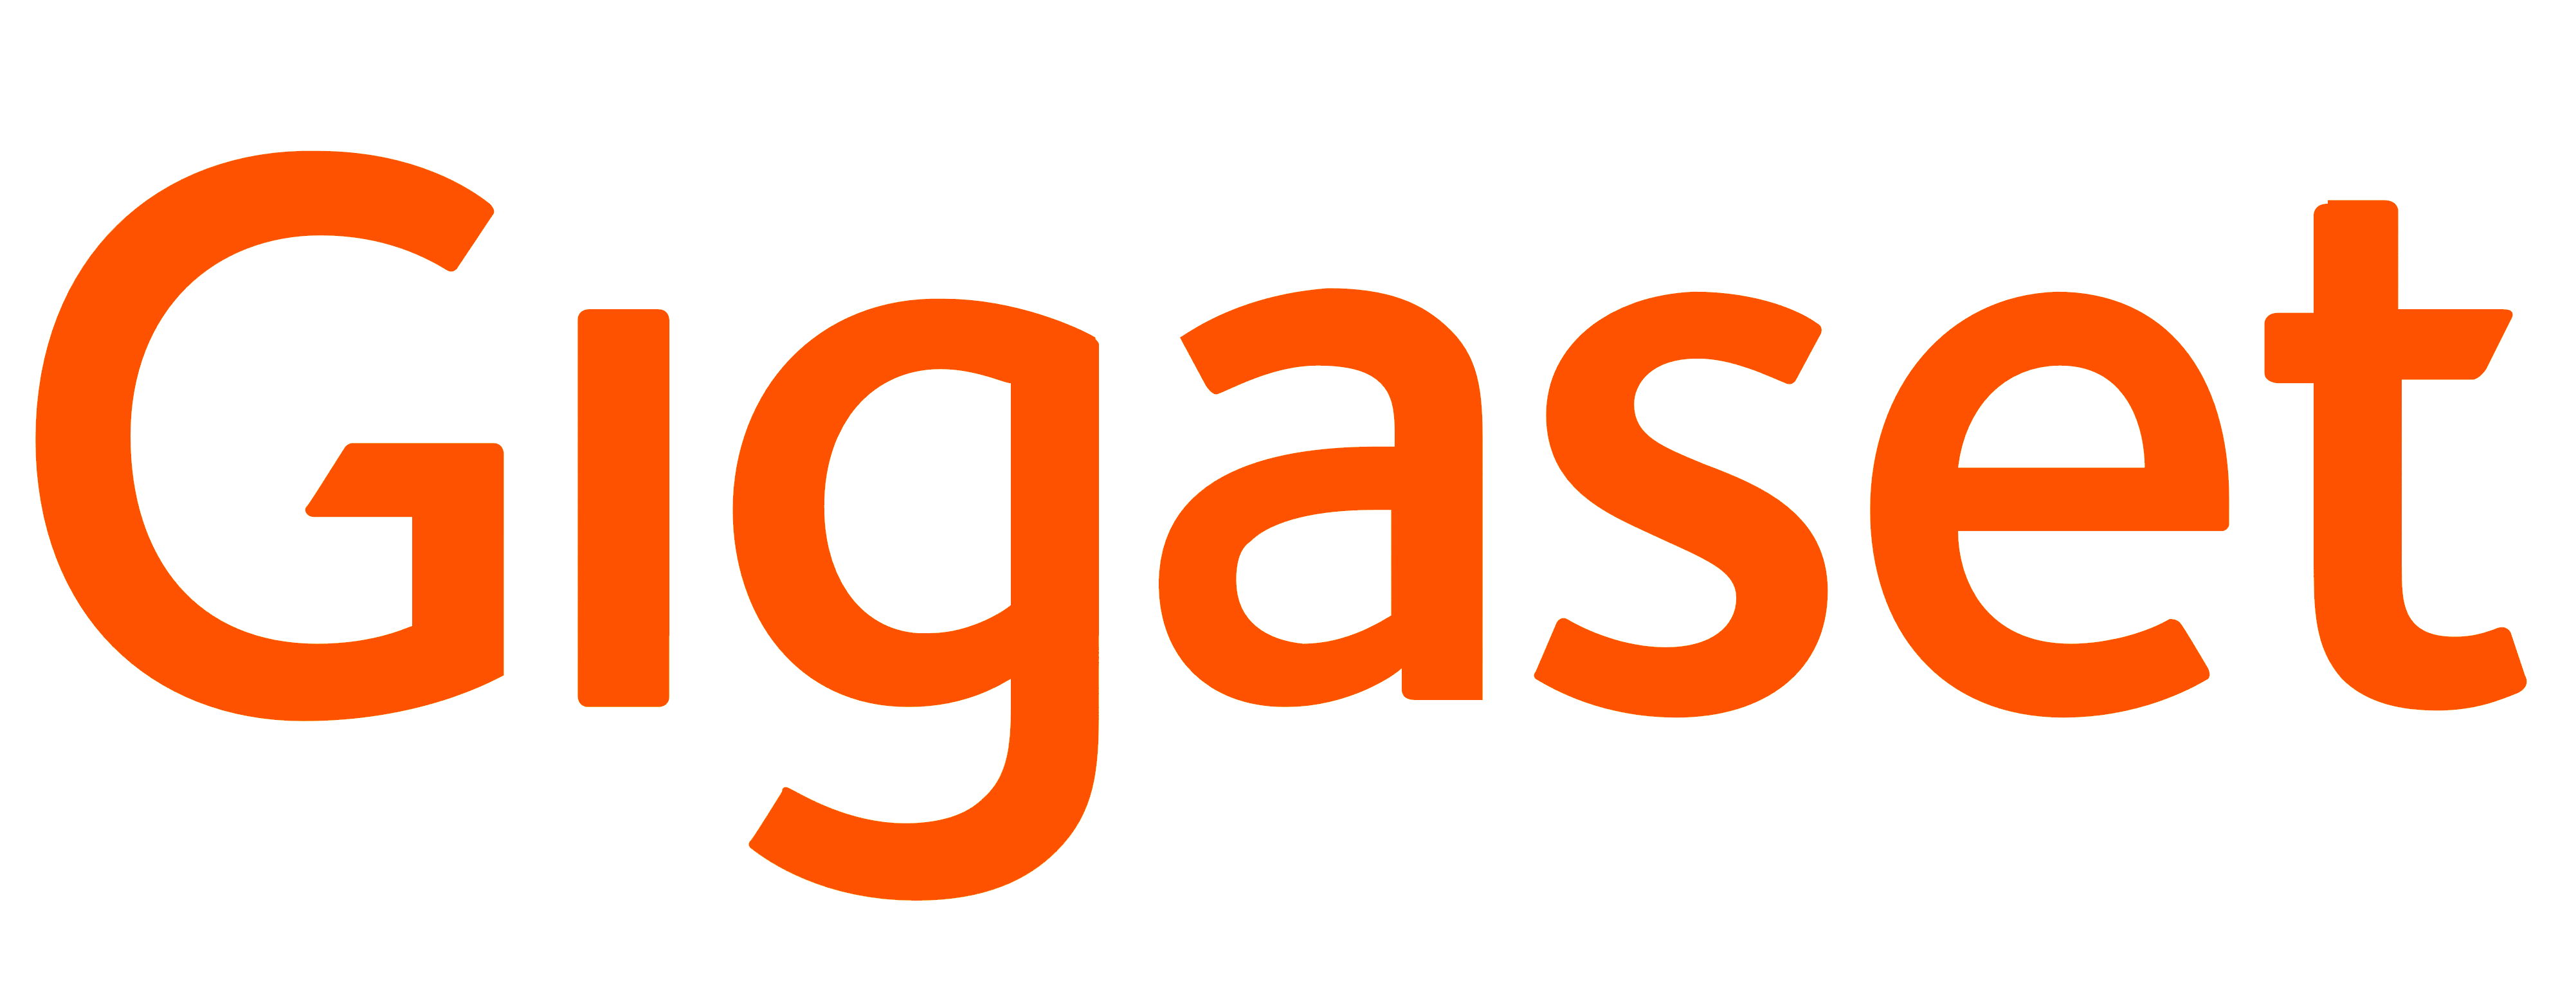 Image result for gigaset logo